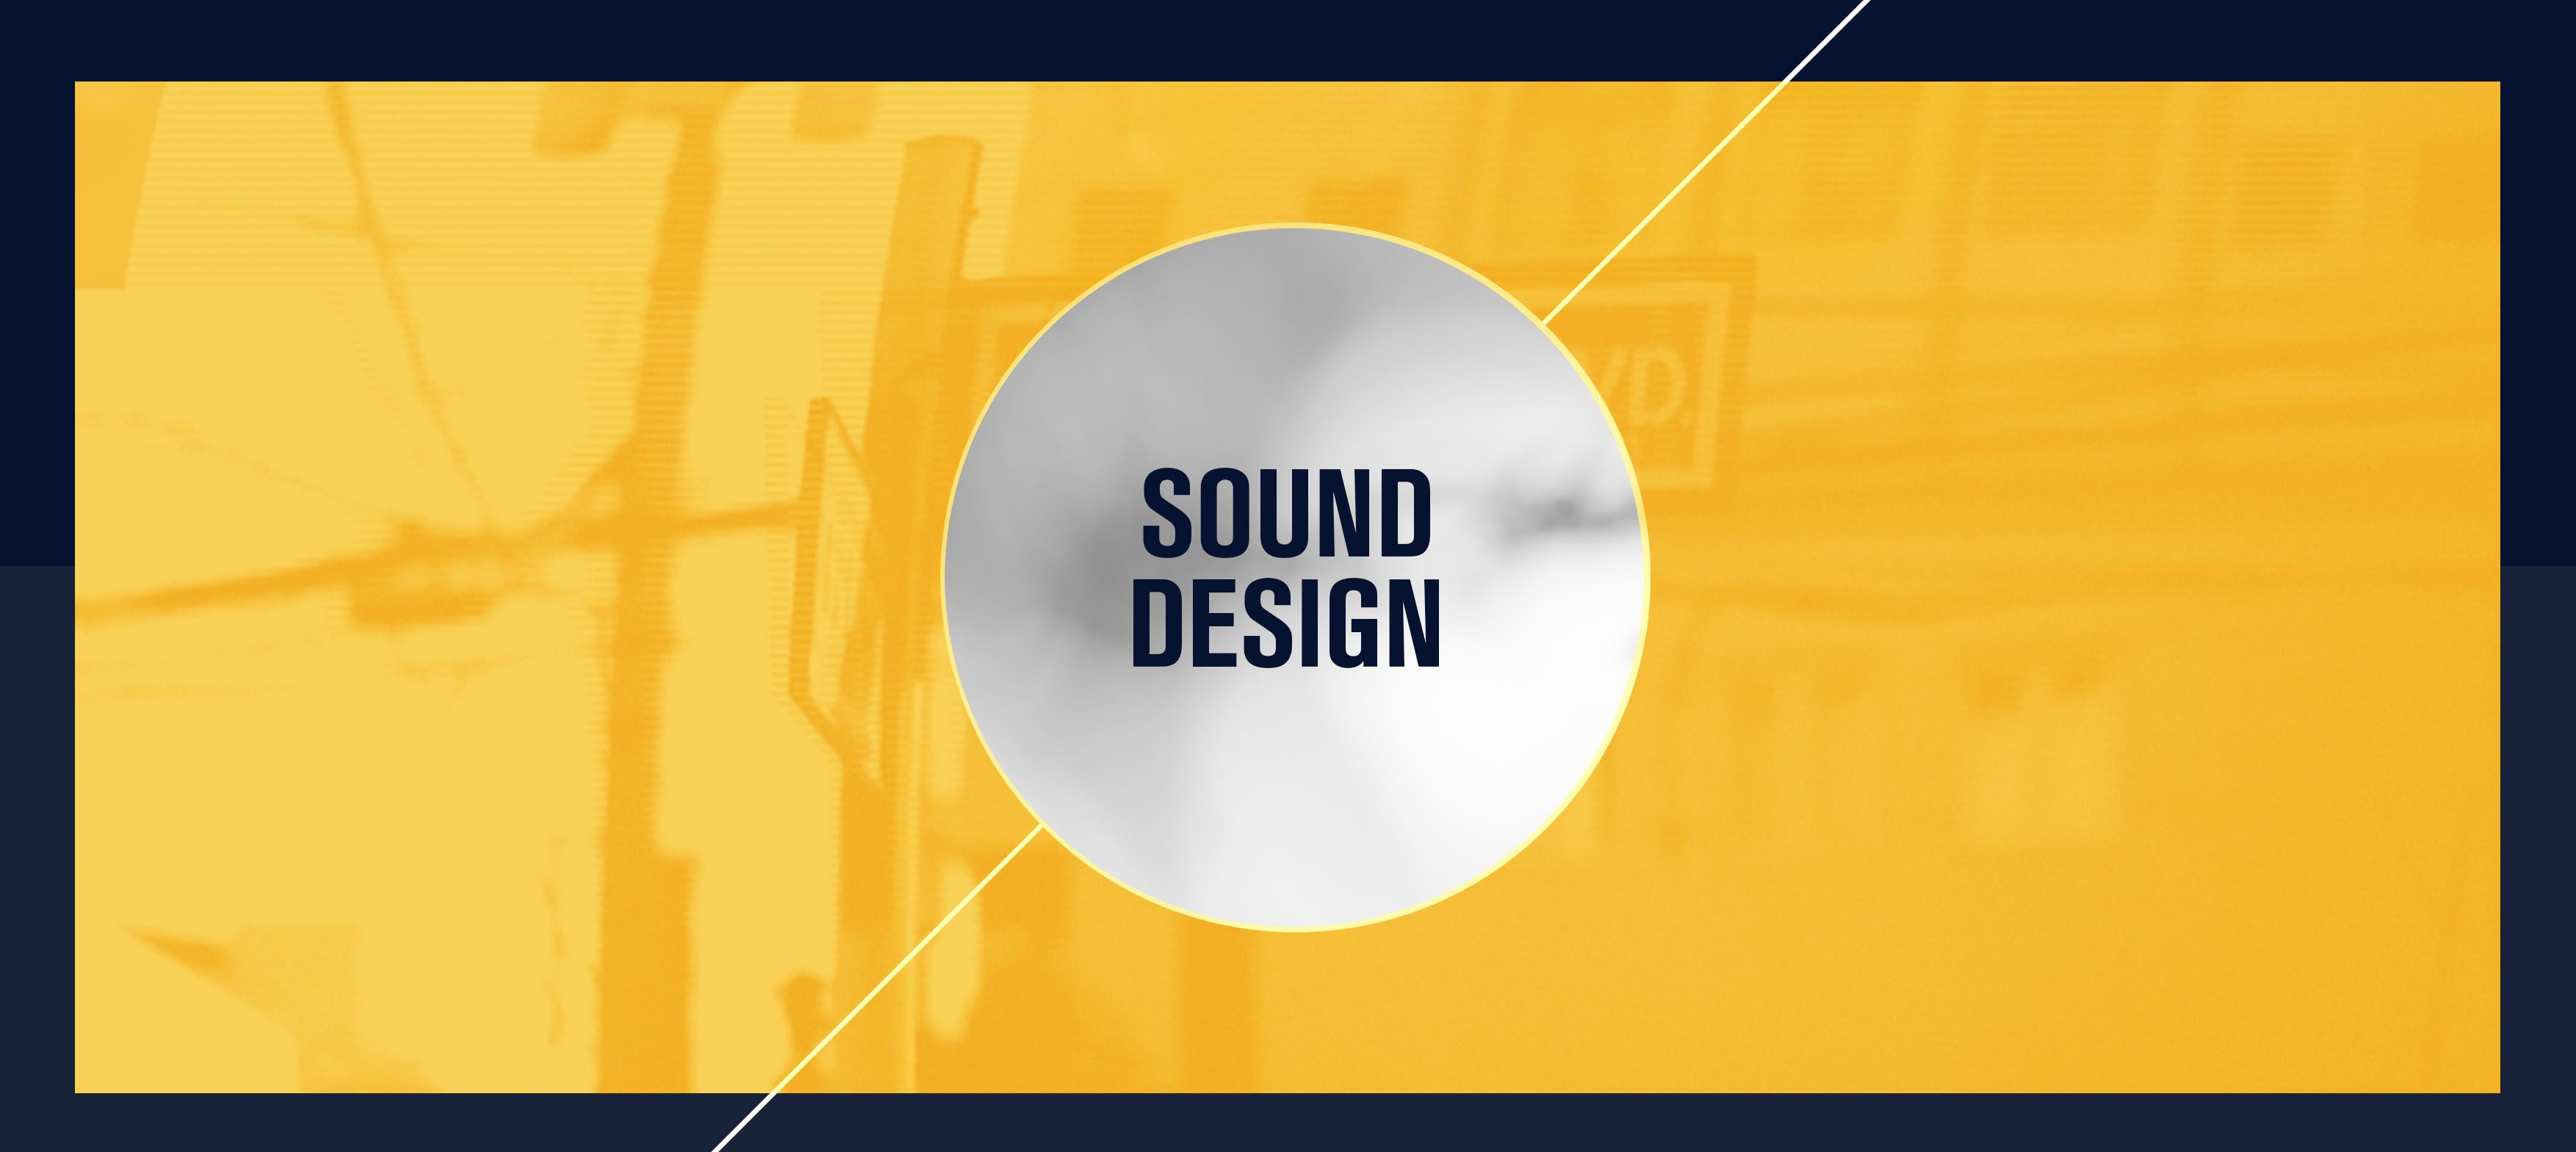 BannersSound Design.jpg